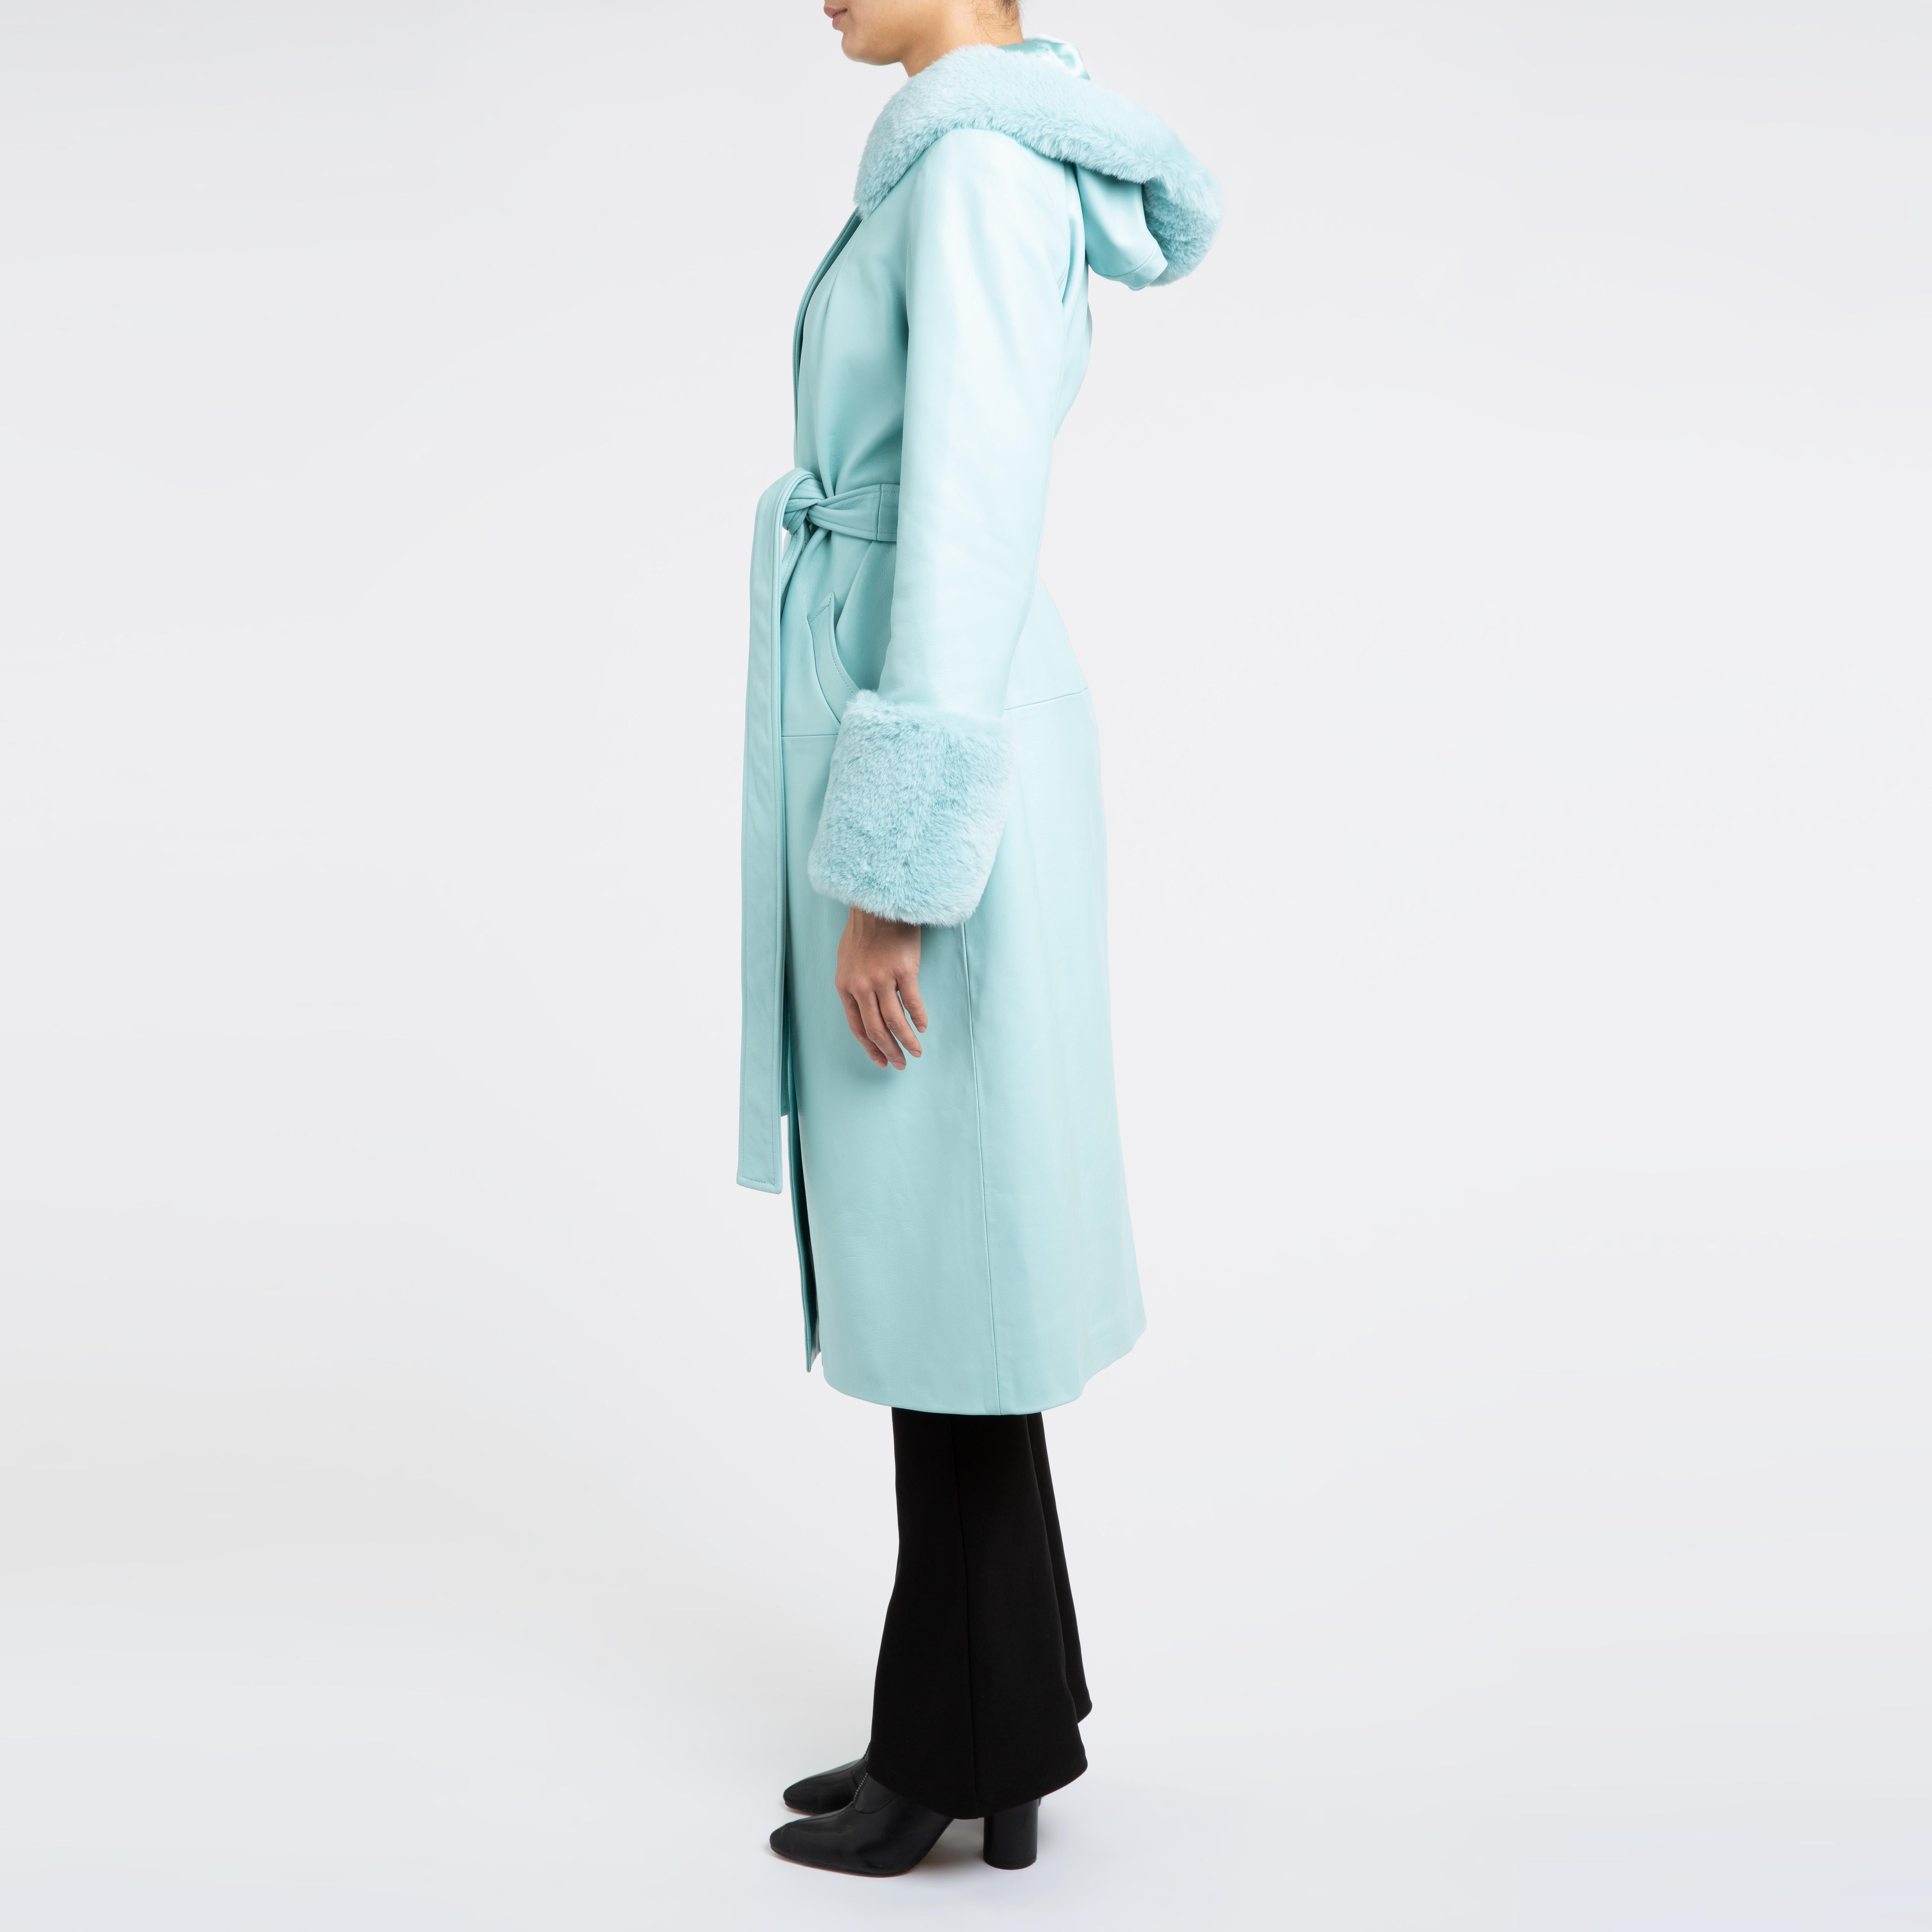 Women's Verheyen London Hooded Leather Coat in Blue Aquamarine & Faux Fur - Size uk 8 For Sale